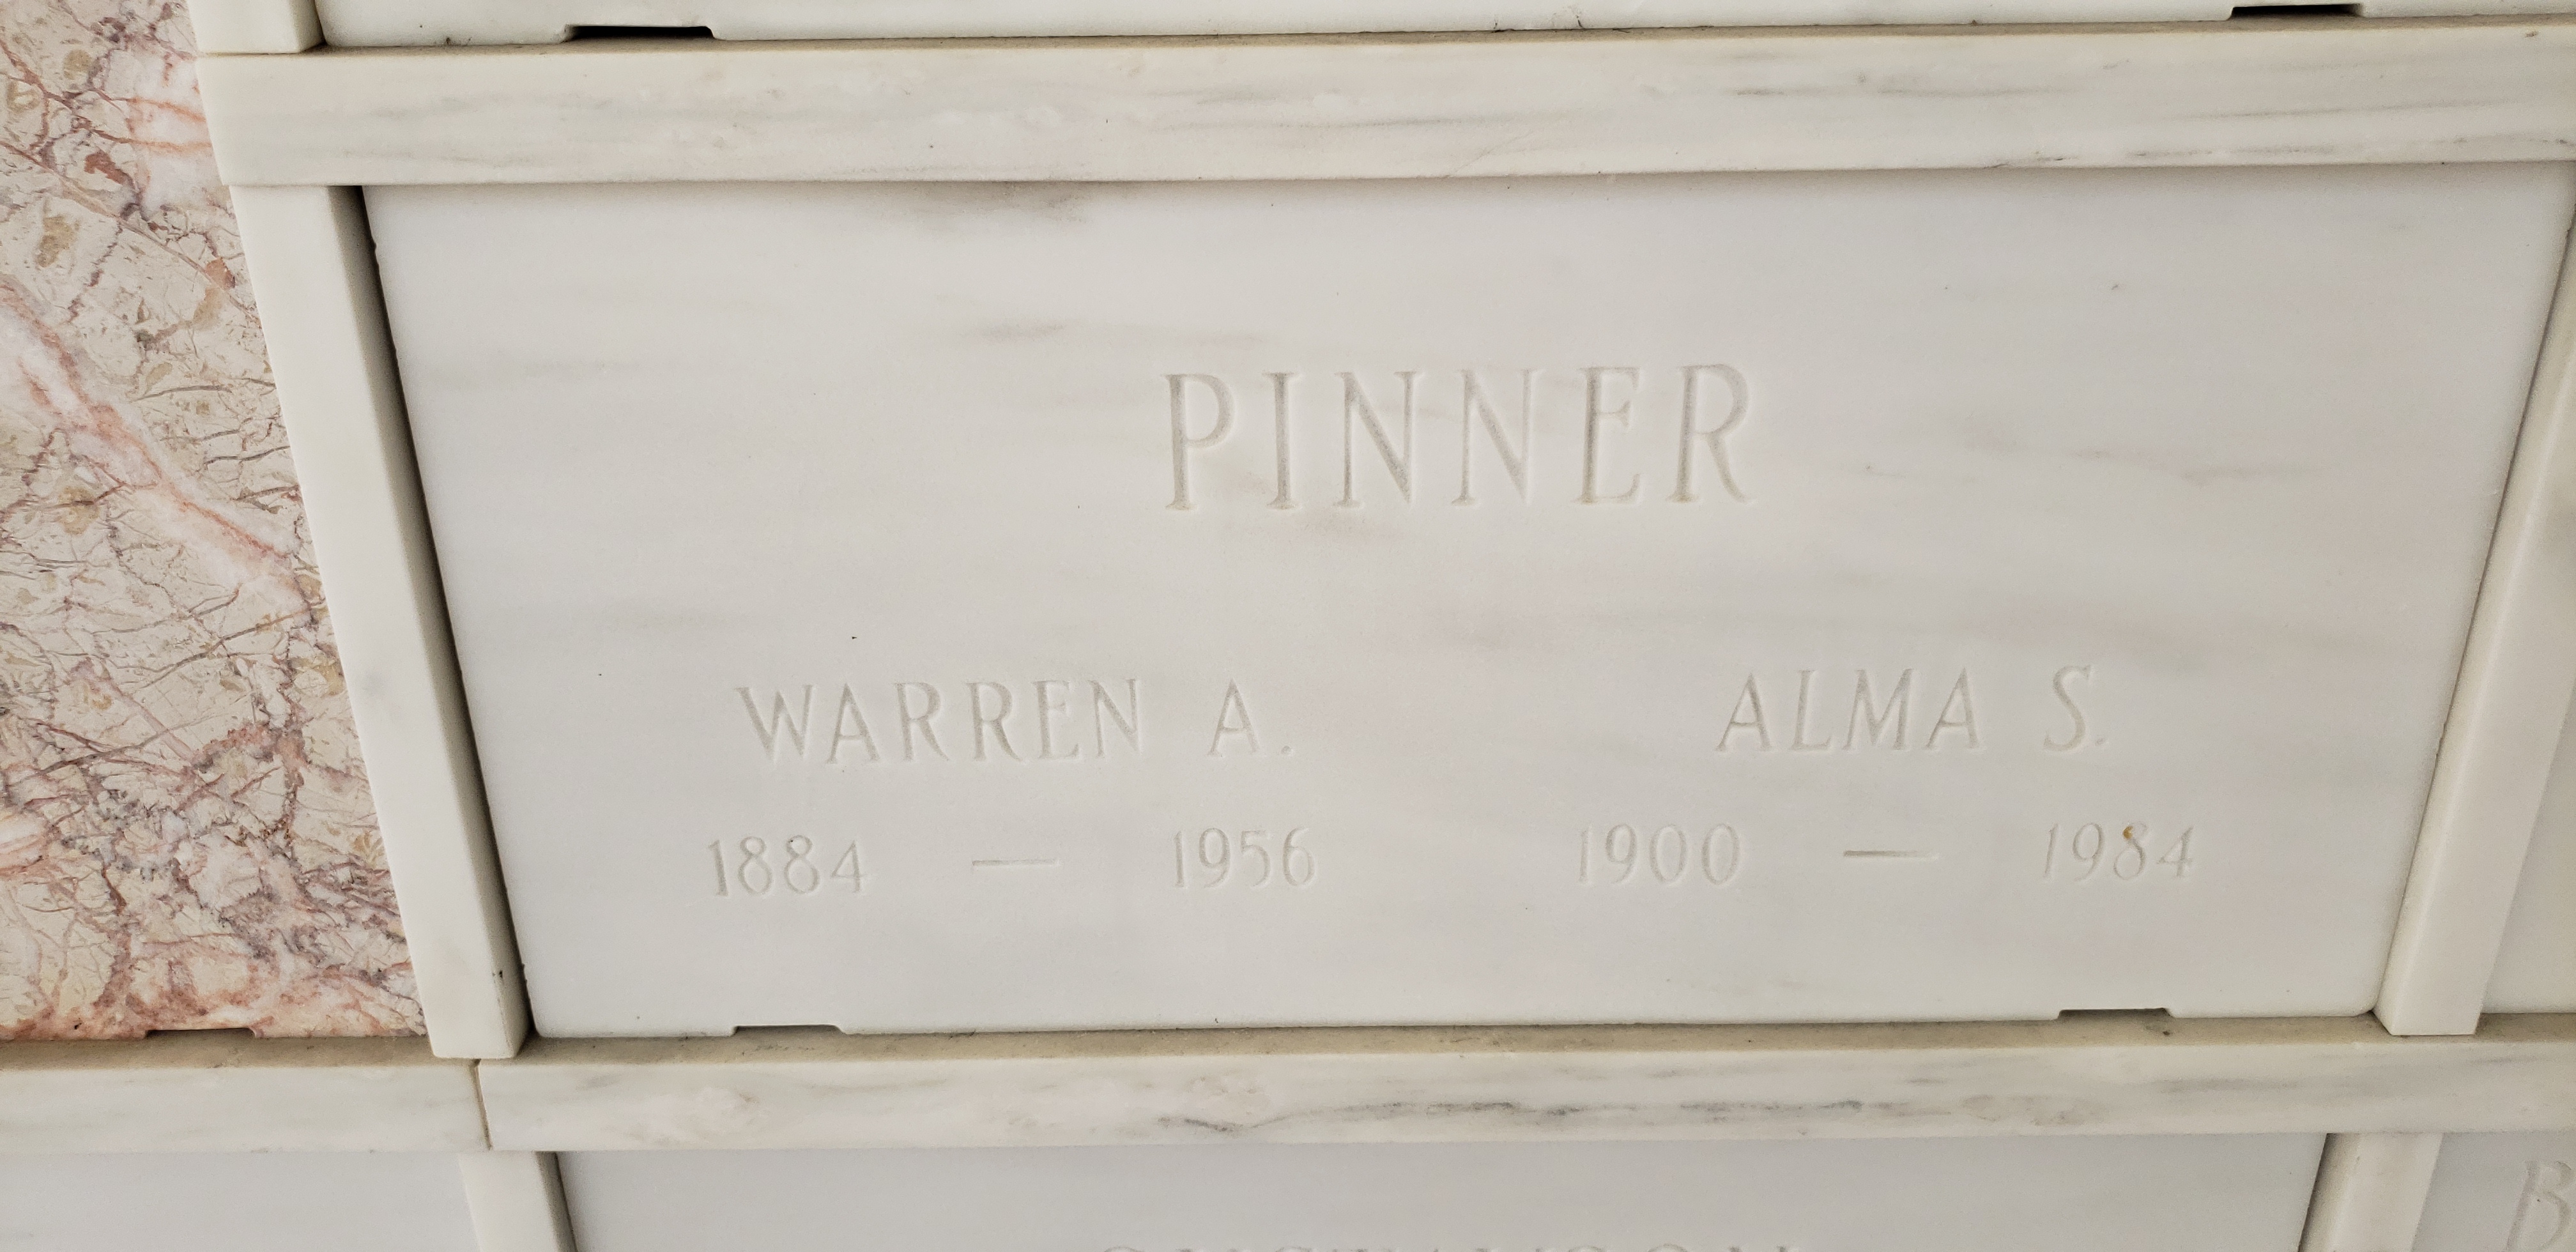 Warren A Pinner